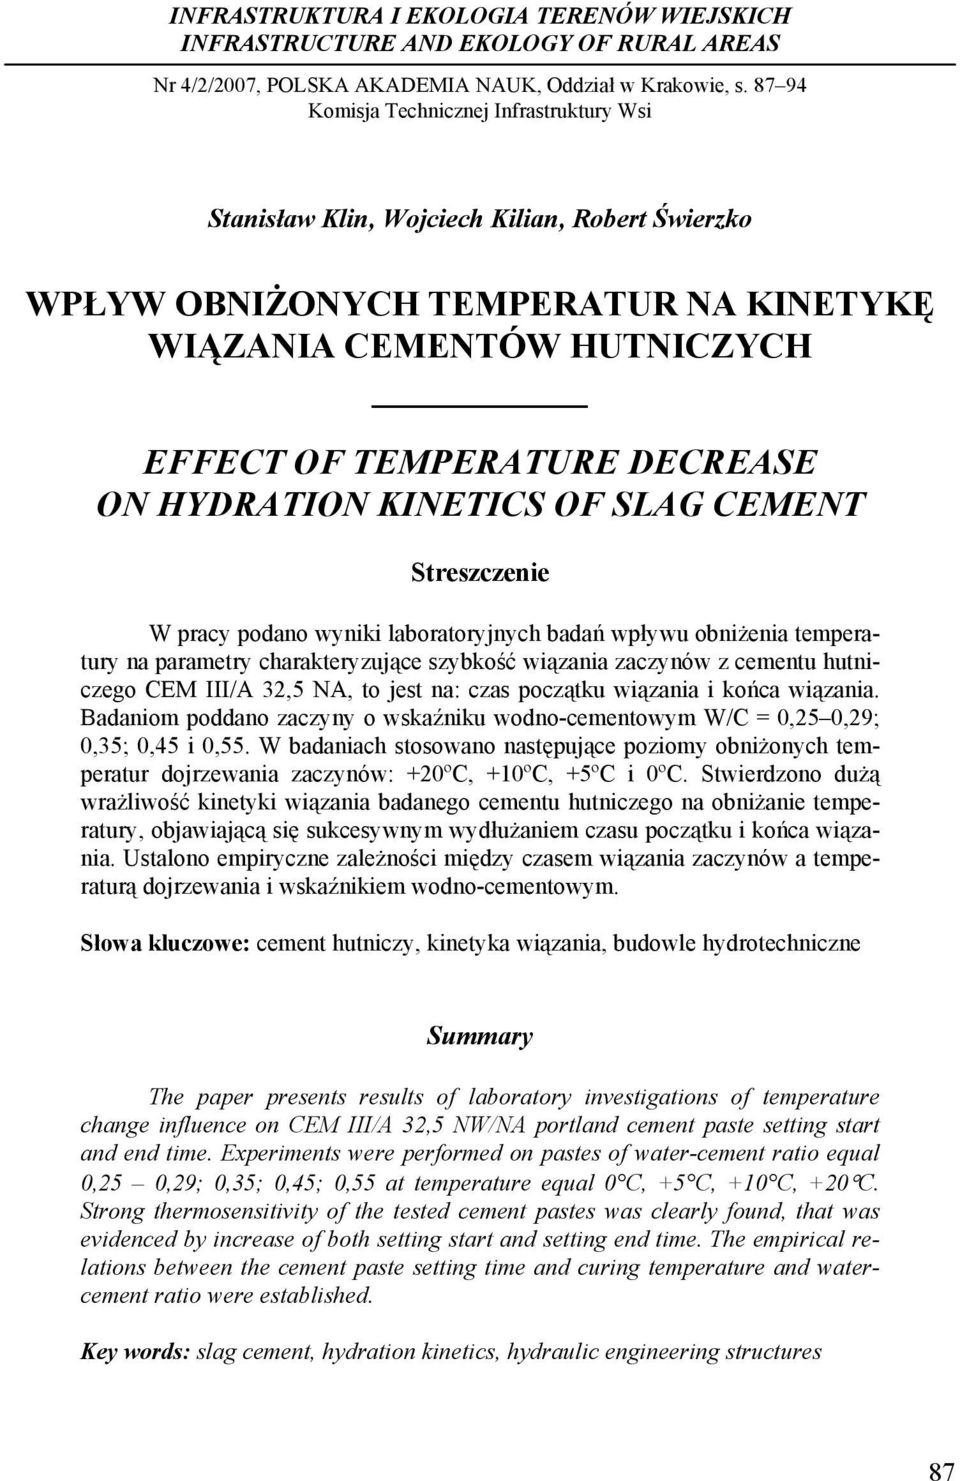 HYDRATION KINETICS OF SLAG CEMENT Streszczenie W pracy podano wyniki laboratoryjnych badań wpływu obniżenia temperatury na parametry charakteryzujące szybkość wiązania zaczynów z cementu hutniczego